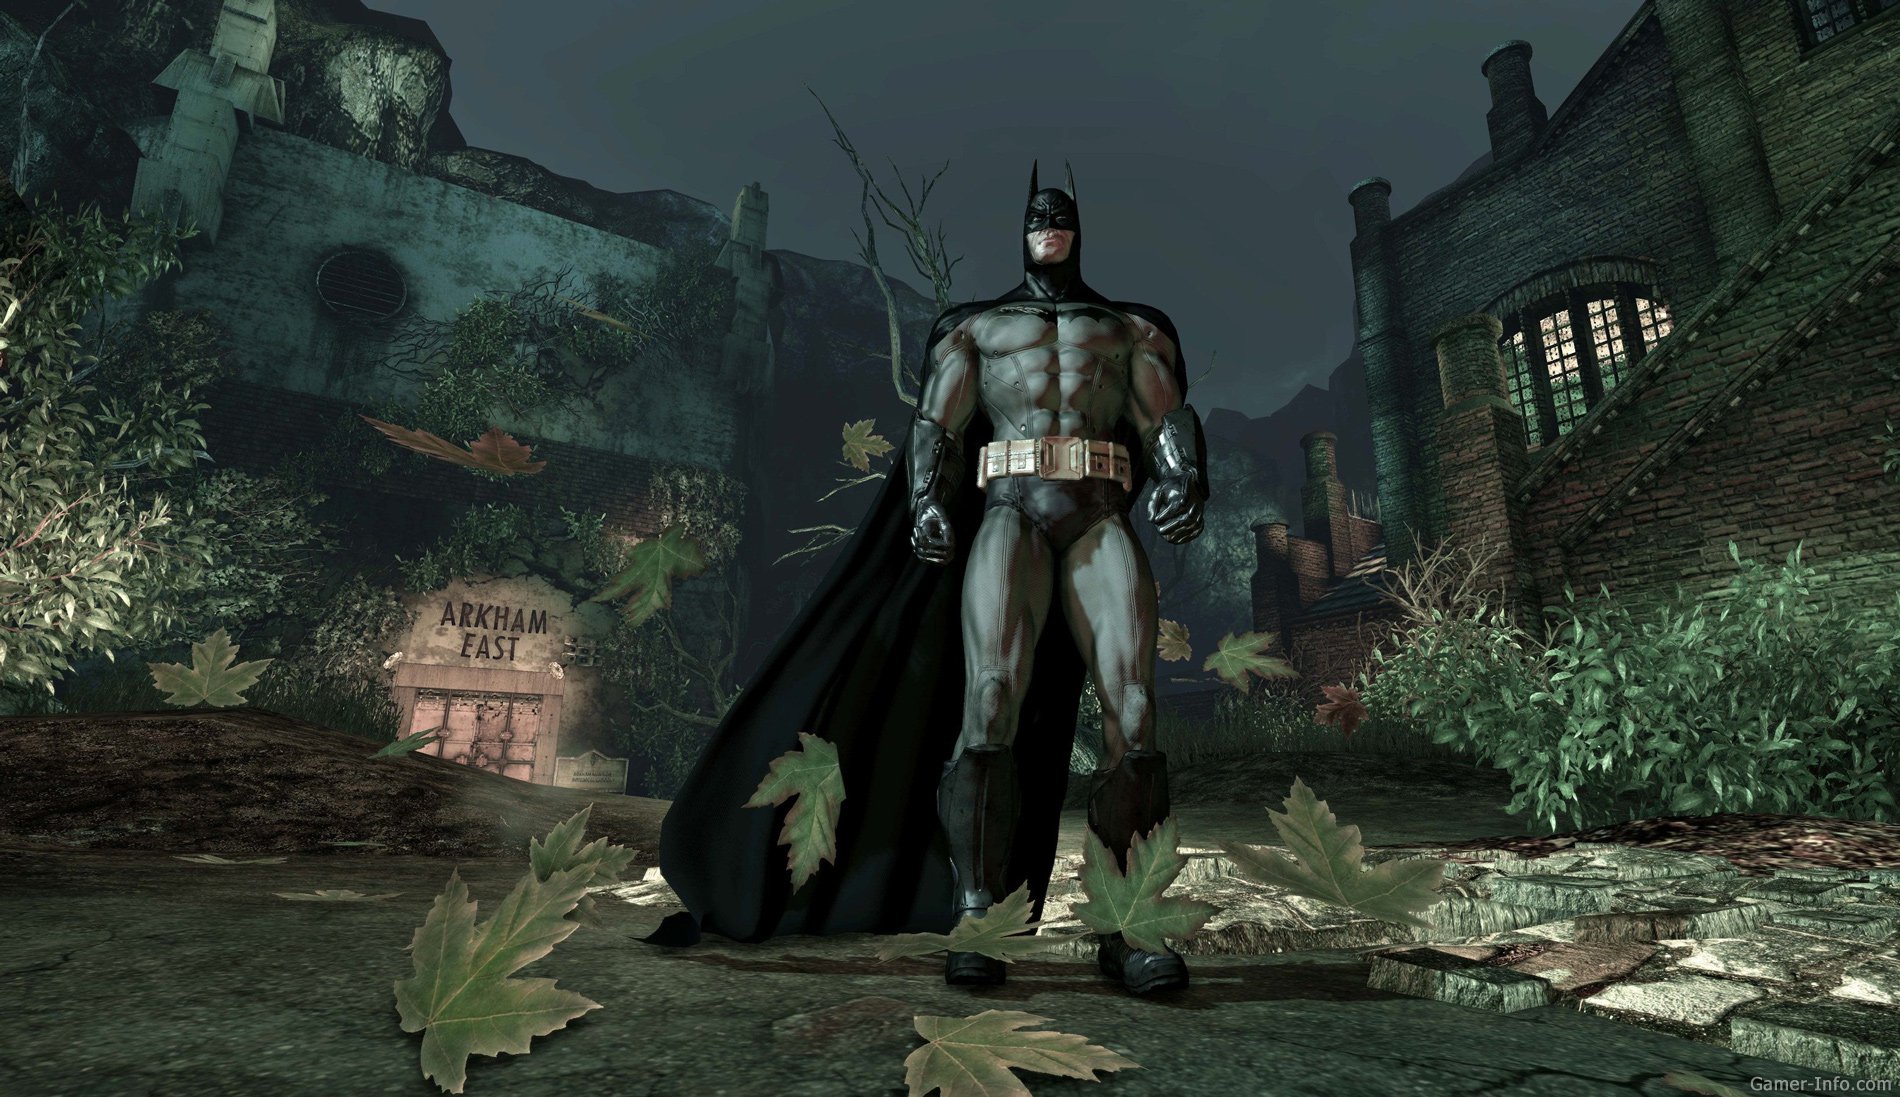 Batman: Arkham Asylum (2009 video game)